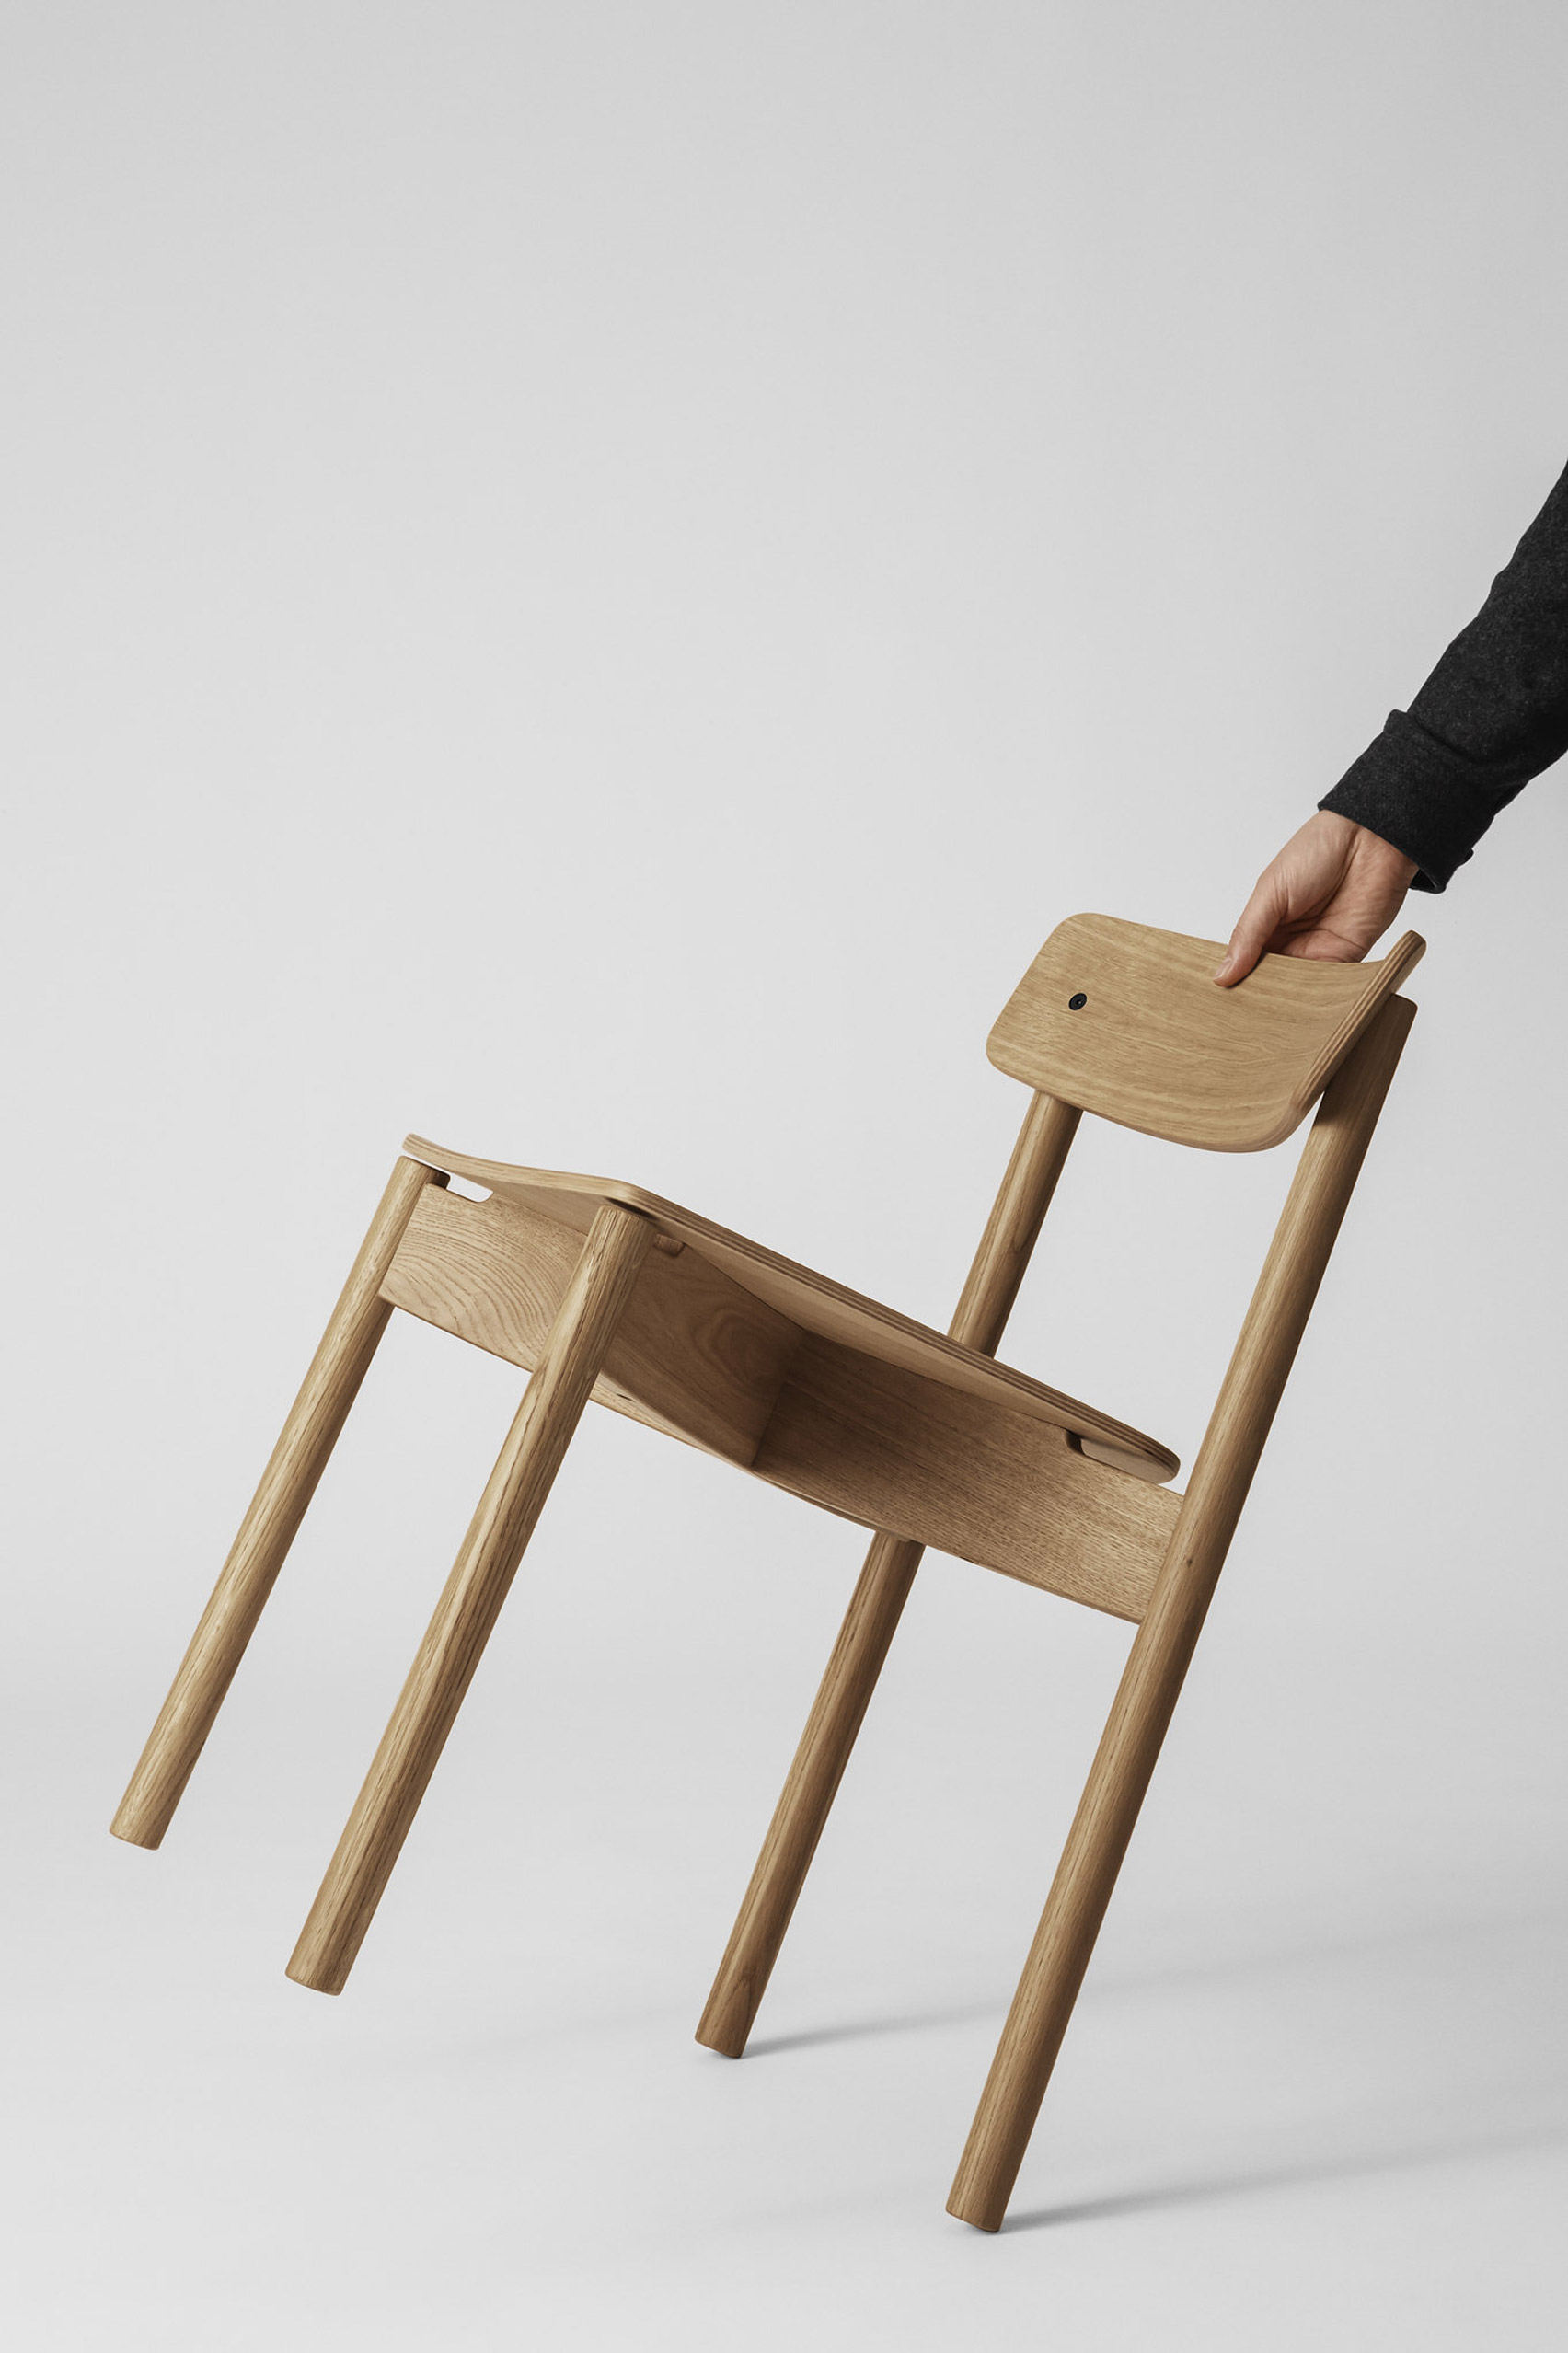 Takt椅子是第一件获得欧盟“更透明”可持续性评分的家具|ART-Arrakis | 建筑室内设计的创新与灵感